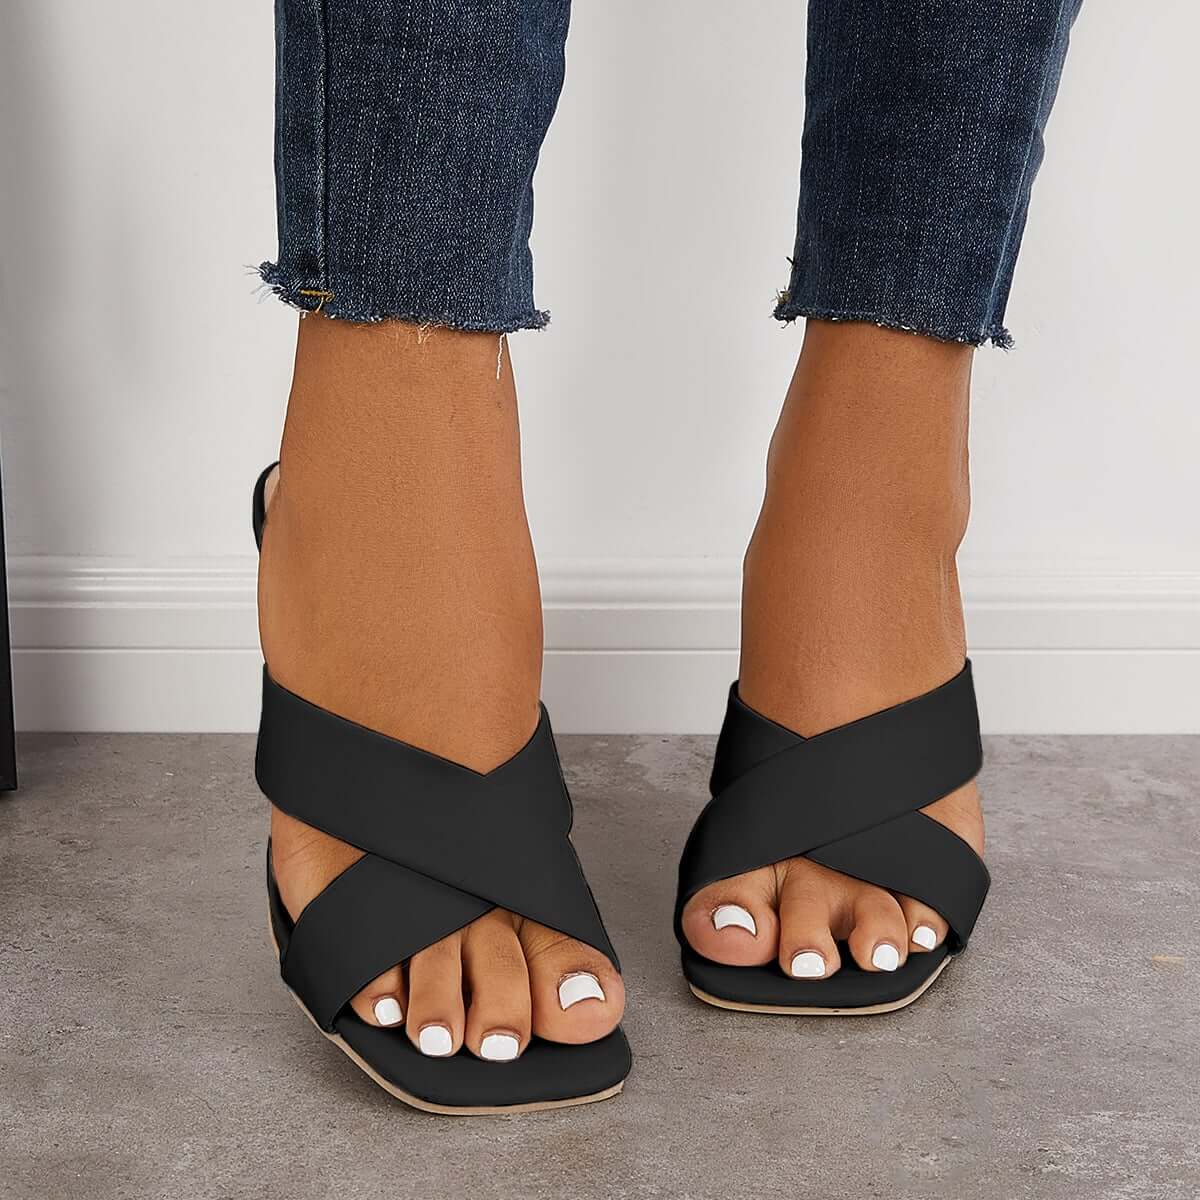 Square Toe Cross Slip On Mid Heel Slipper Dress Sandals